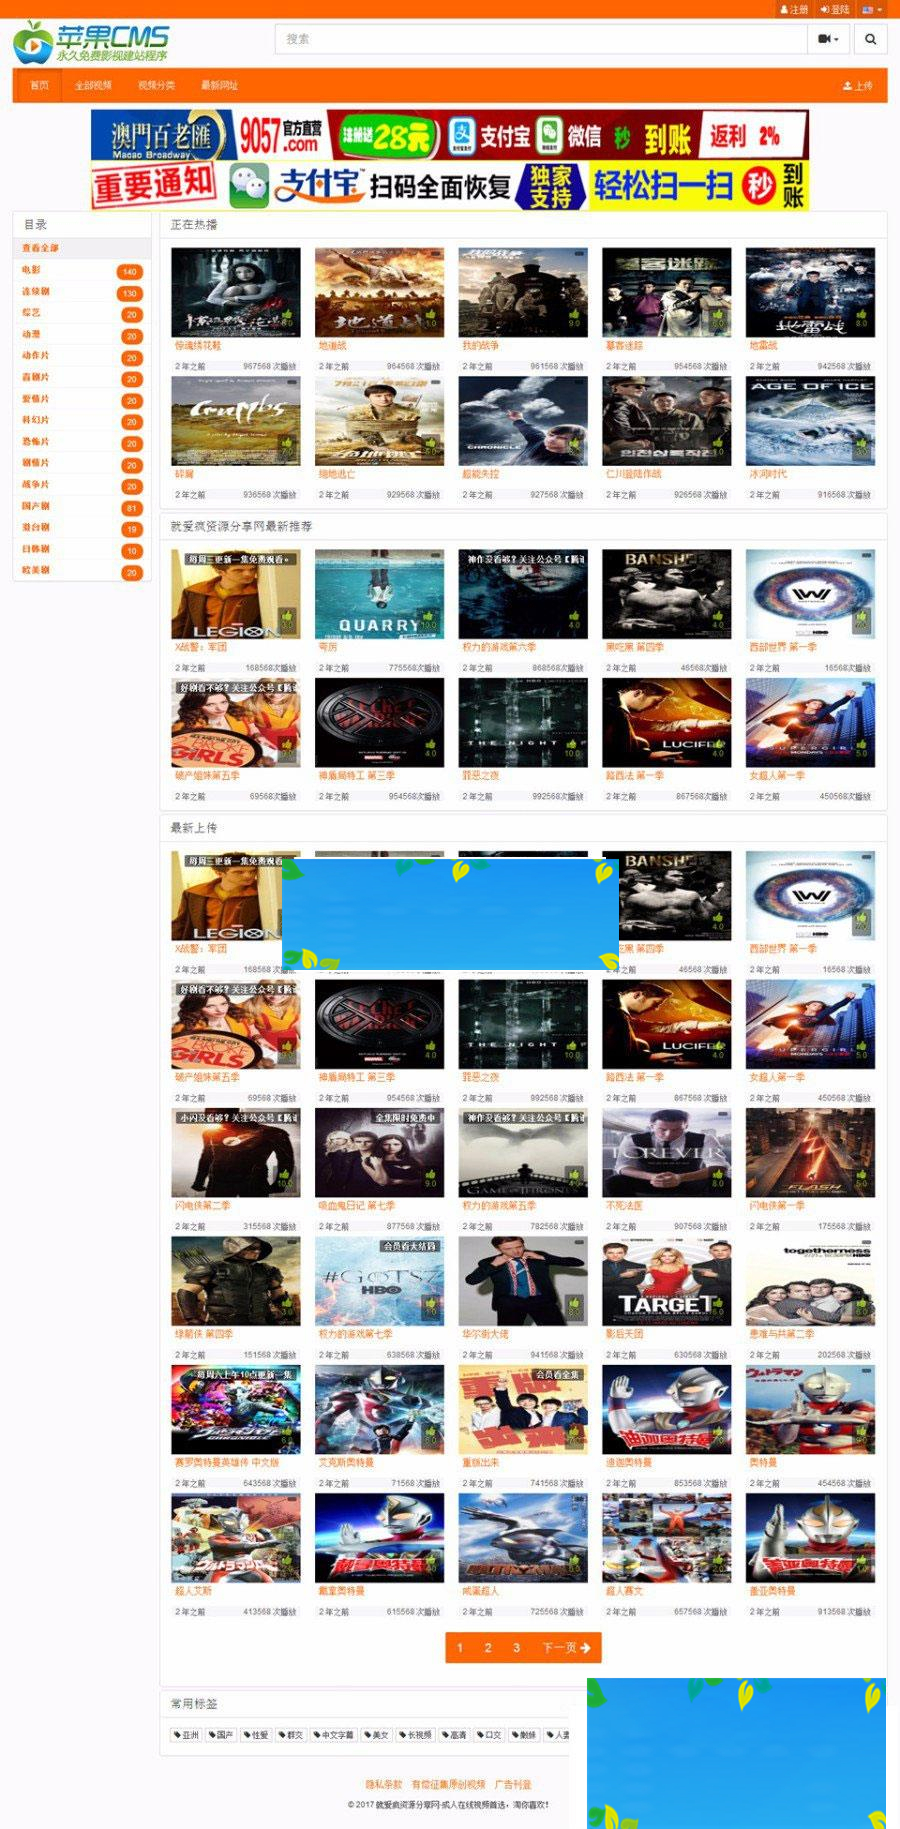 苹果cms8x模板 橙色风格仿某电影视频H站自适应模板_源码下载-何以博客